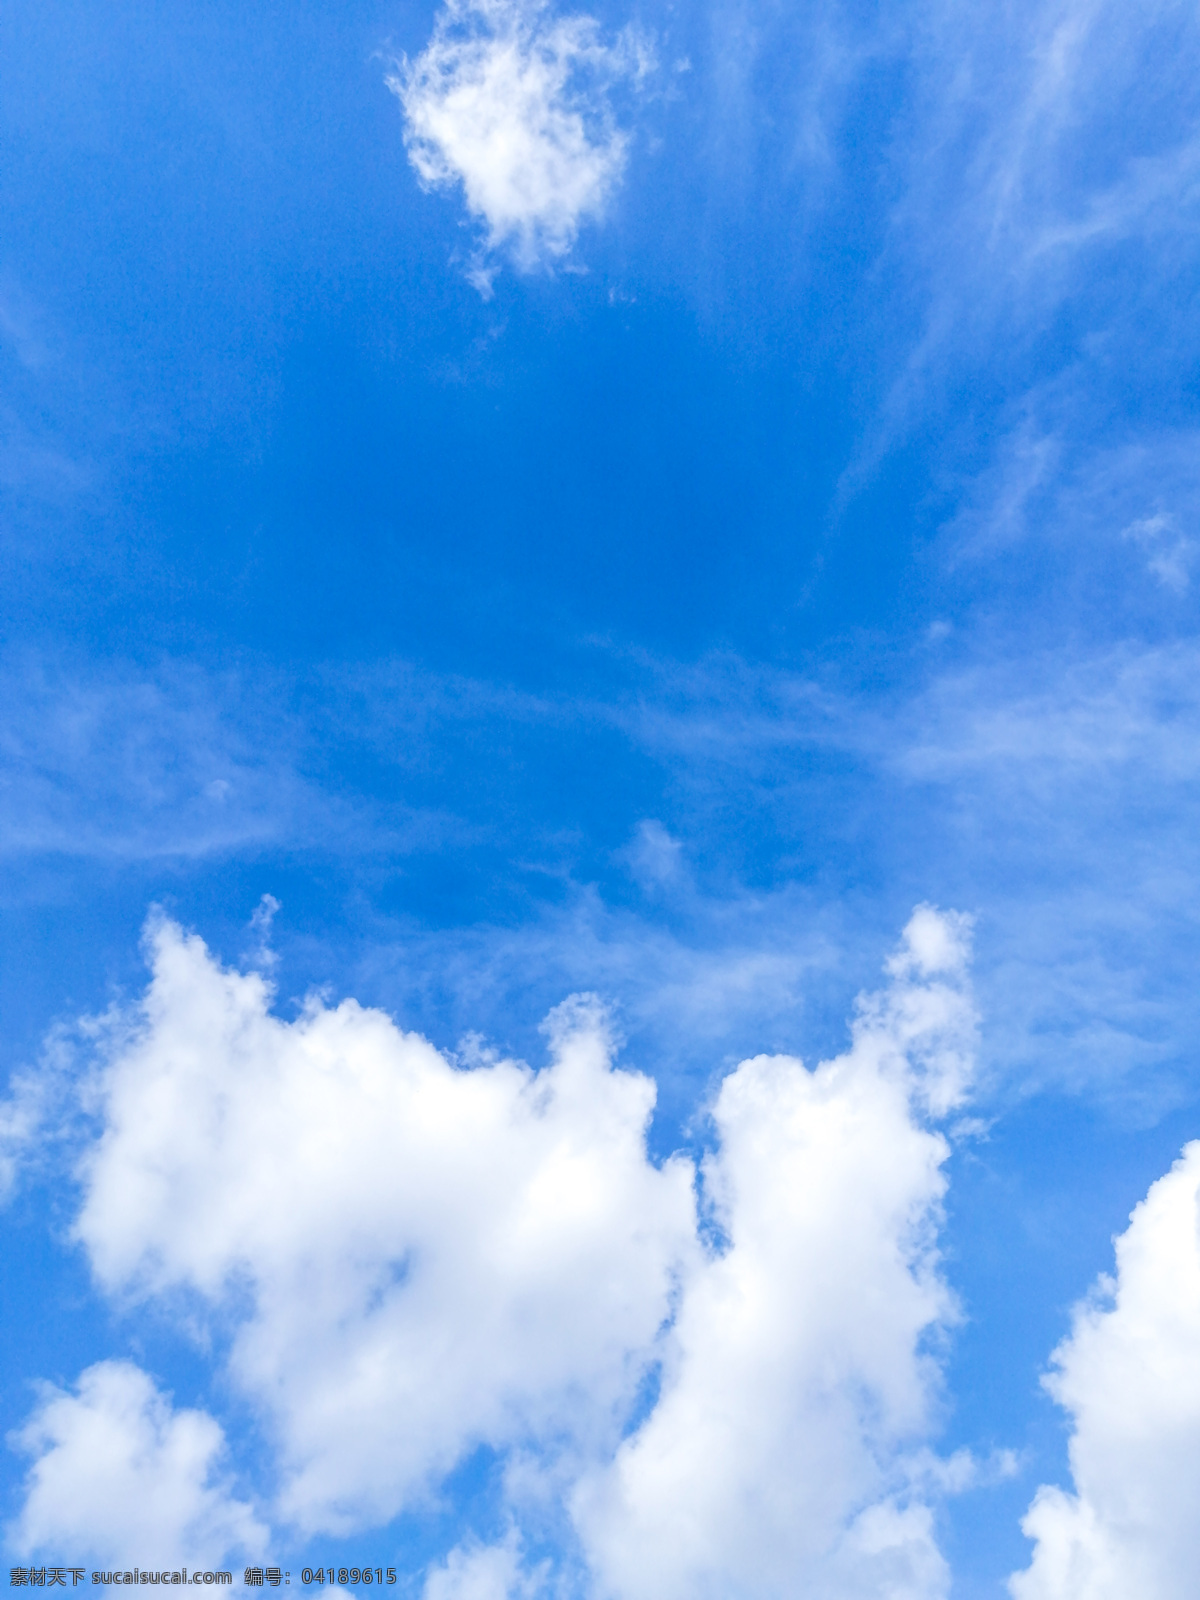 蓝天白云 云朵 天空 白云 晴天 多云 壁纸 插画素材 背景素材 海报素材 风景 日光 自然景观 自然风景